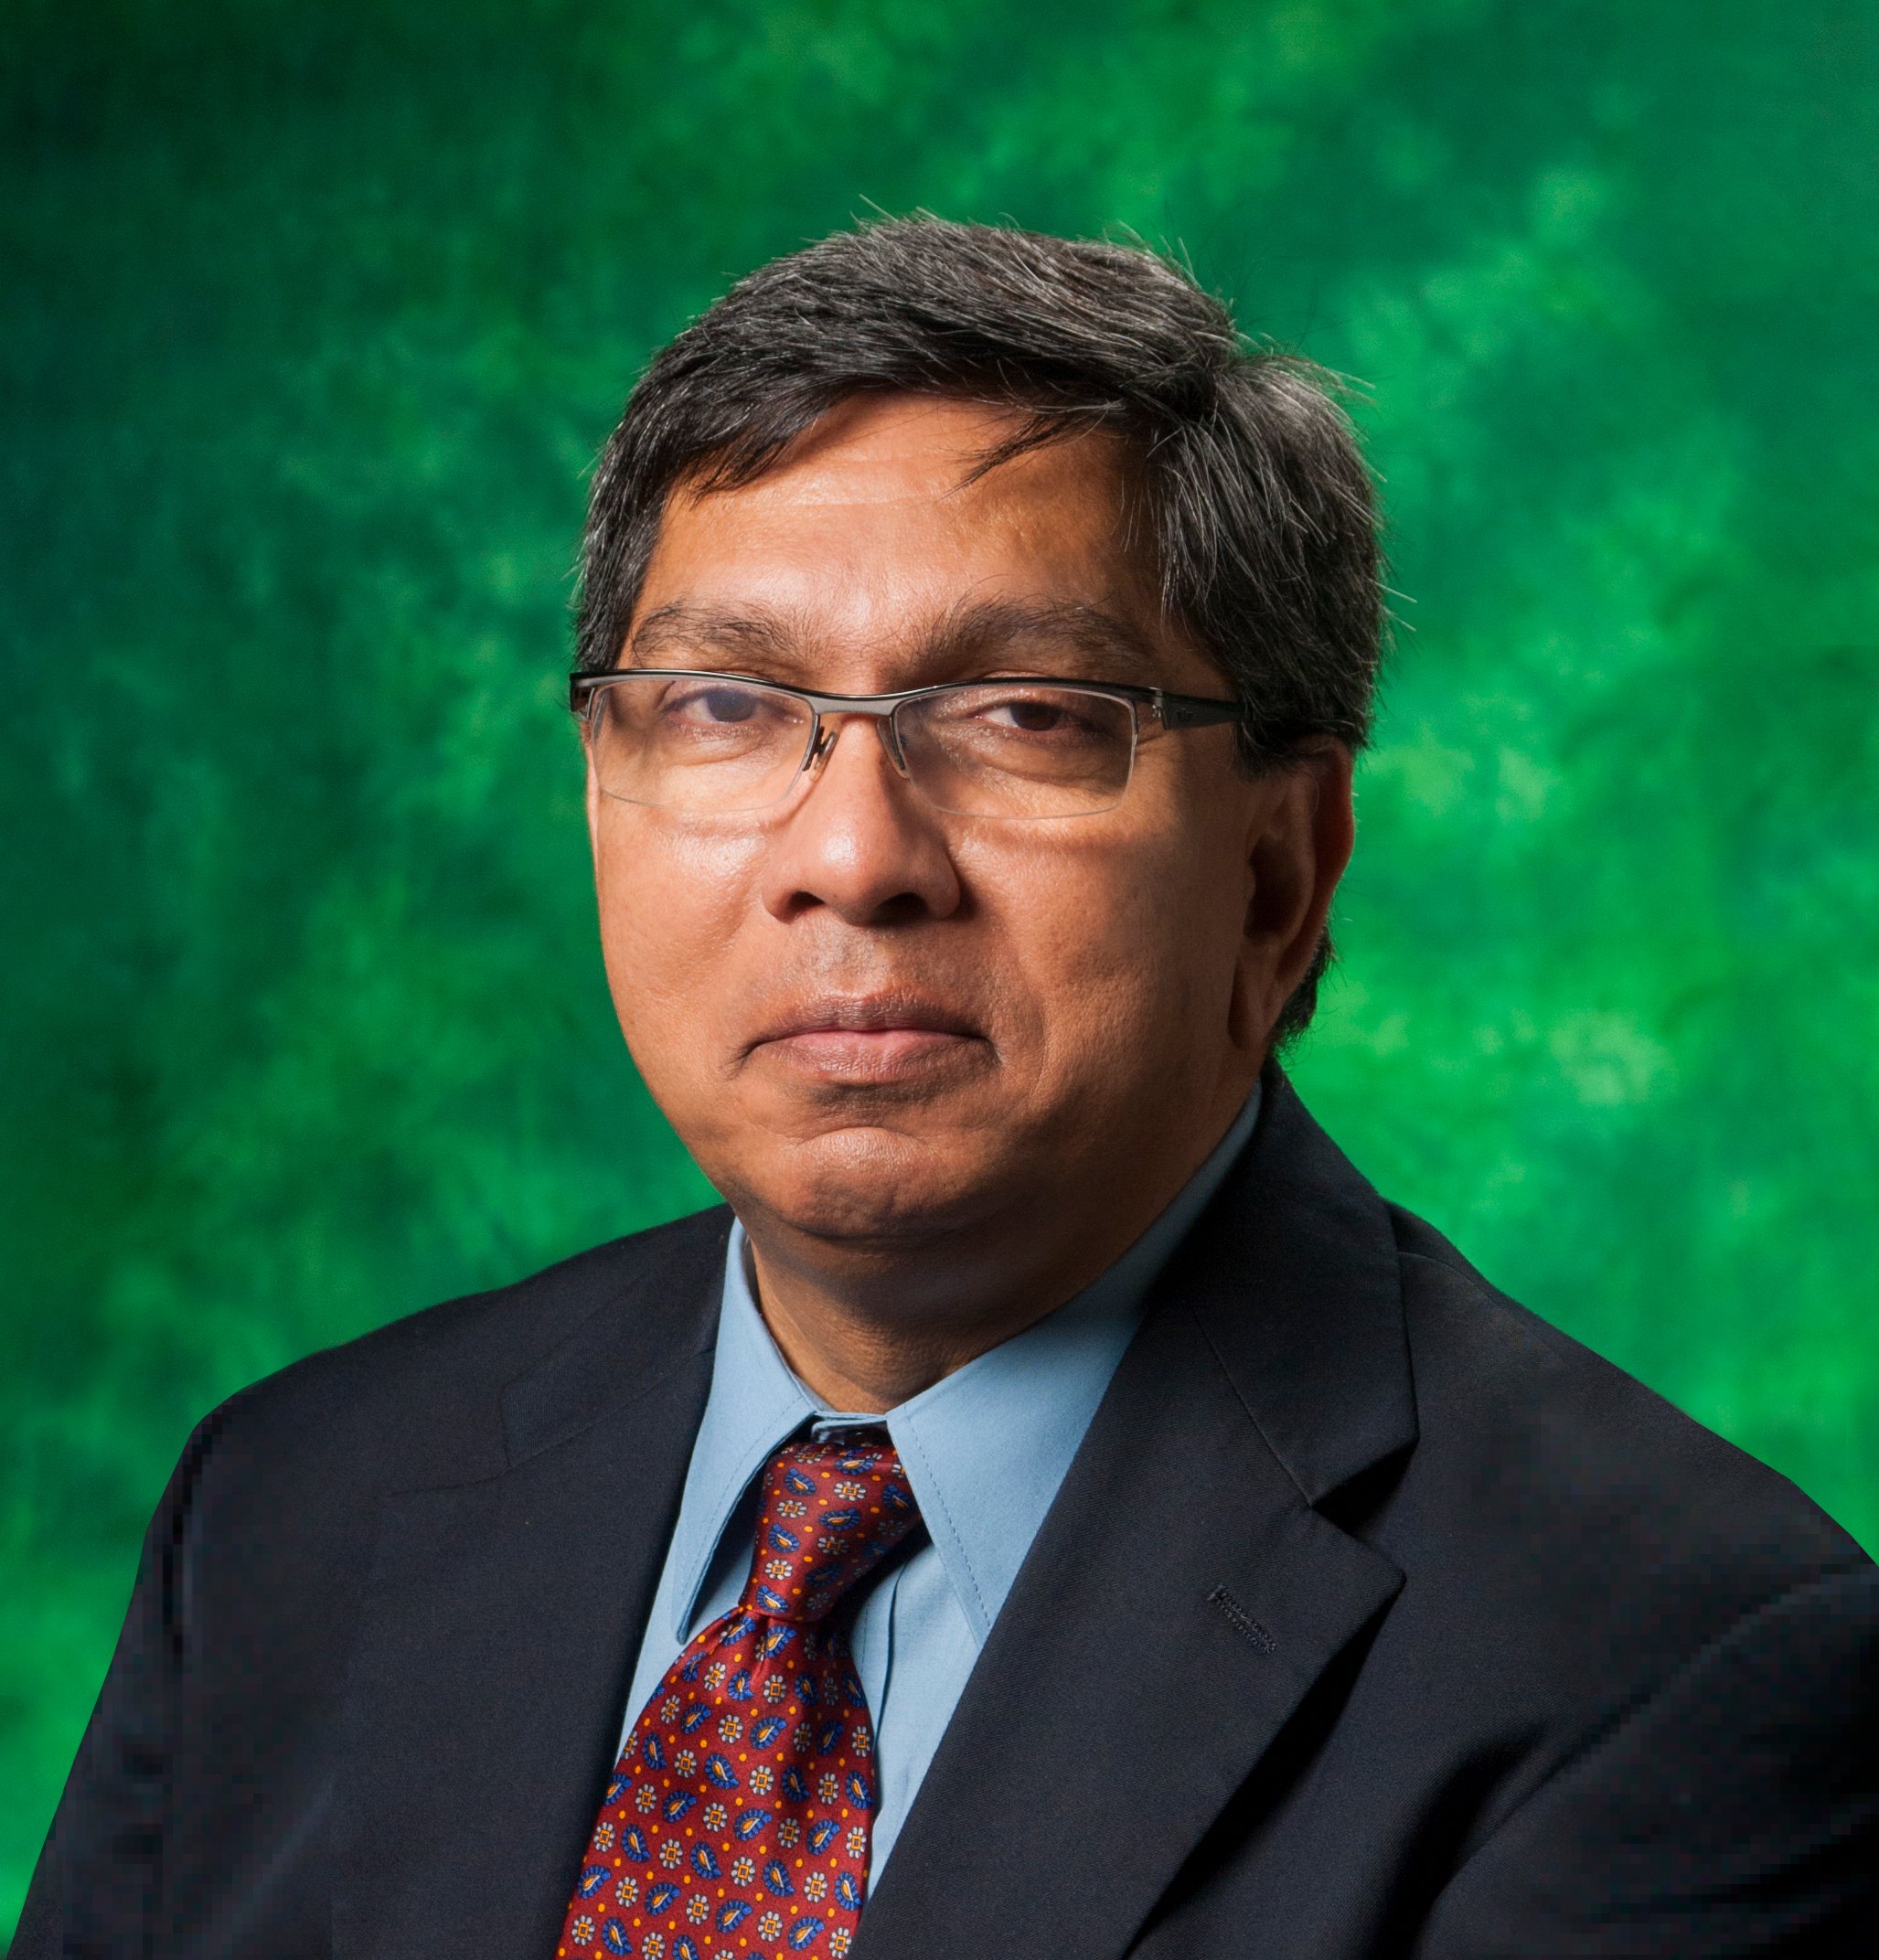 Dr. Audhesh Paswan